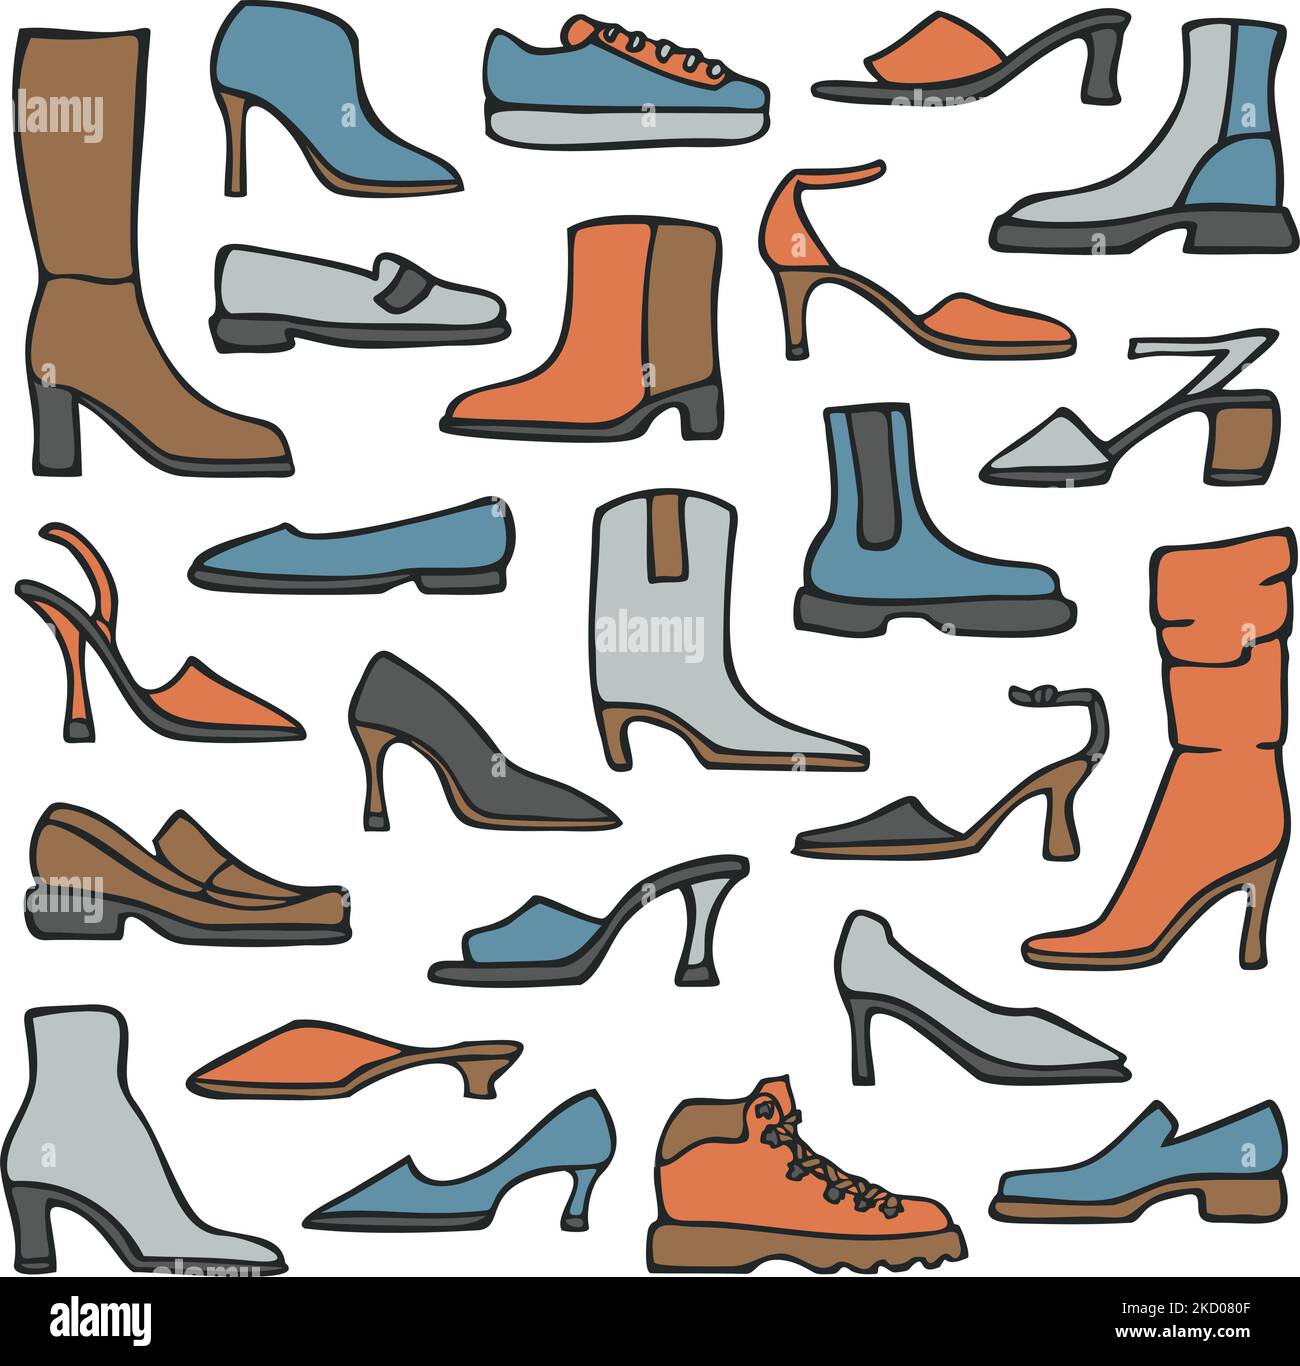 Illustrazione vettoriale con collezione di scarpe da donna. Scarpe da donna disegnate a mano. Grande set di scarpe diverse. Illustrazione Vettoriale